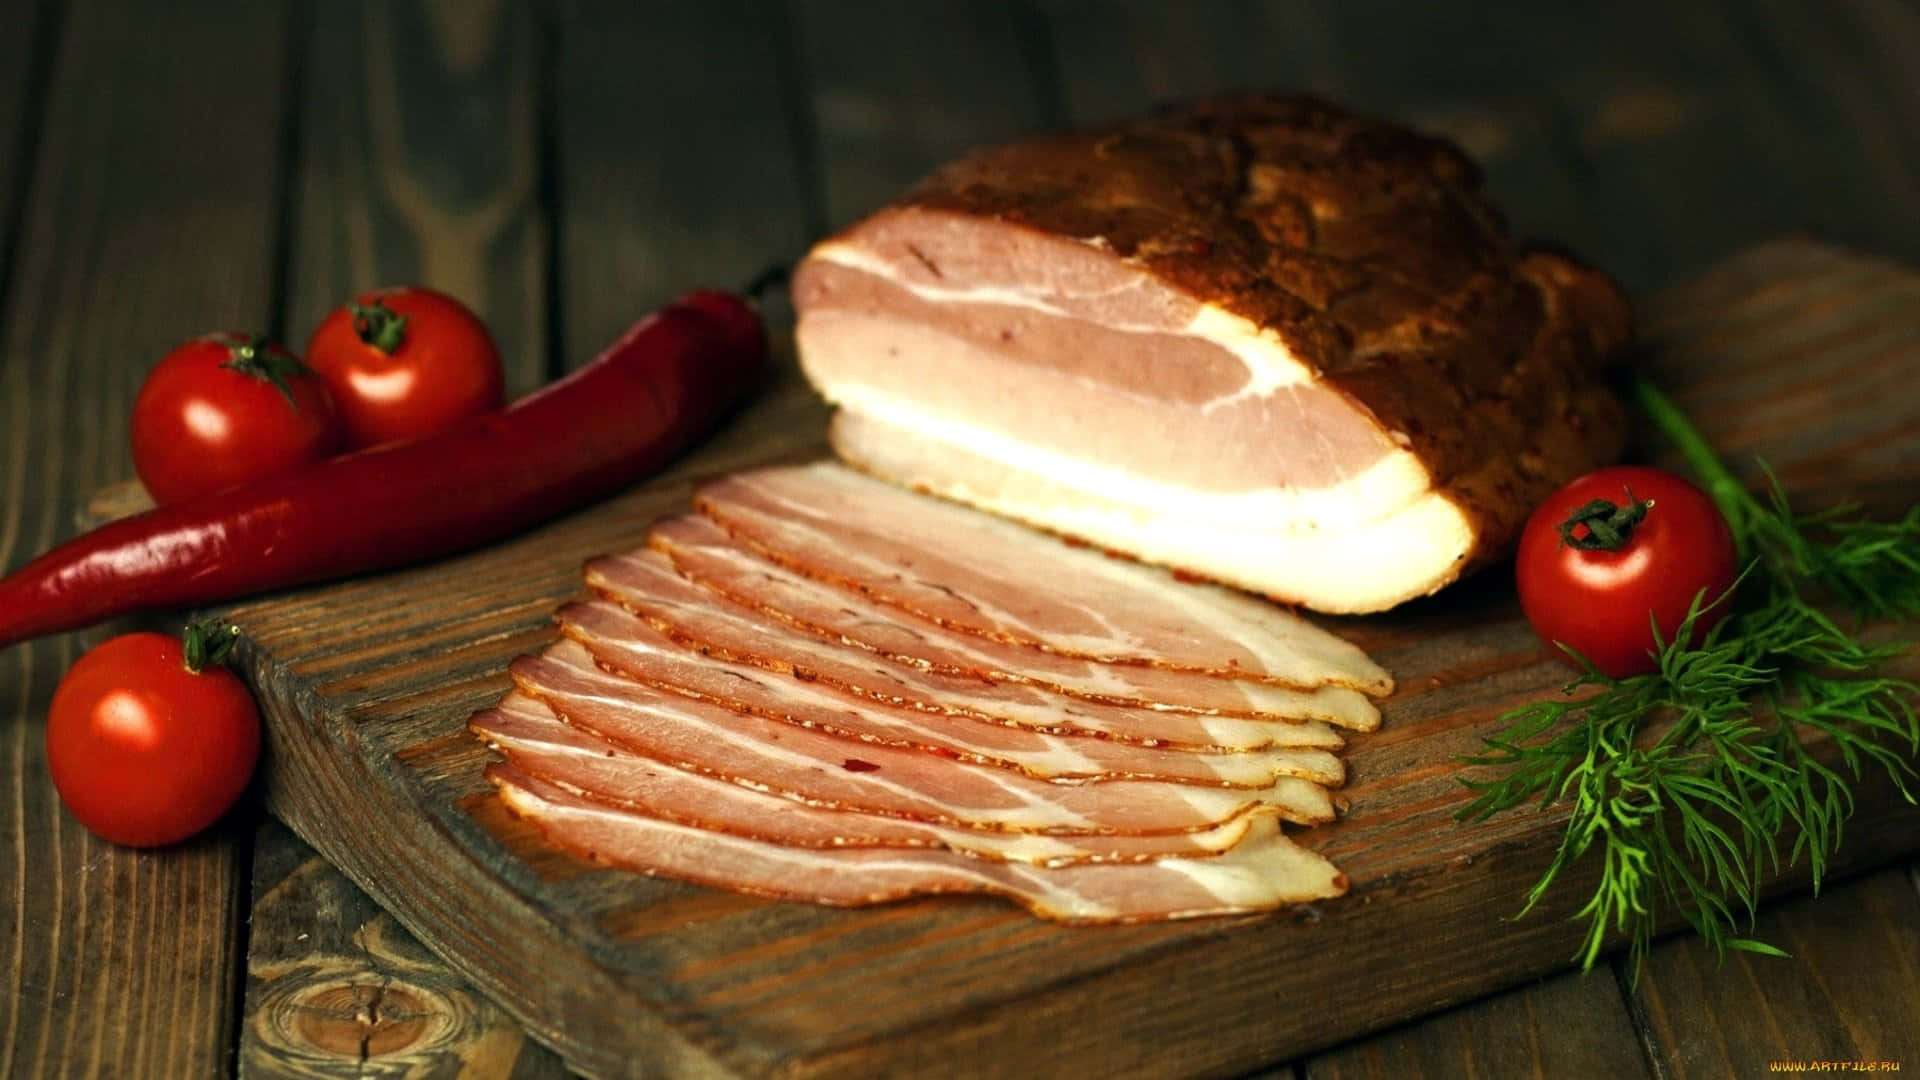 Verleihensie Ihrer Lieblingsmahlzeit Etwas Pepp - Probieren Sie Etwas Bacon.